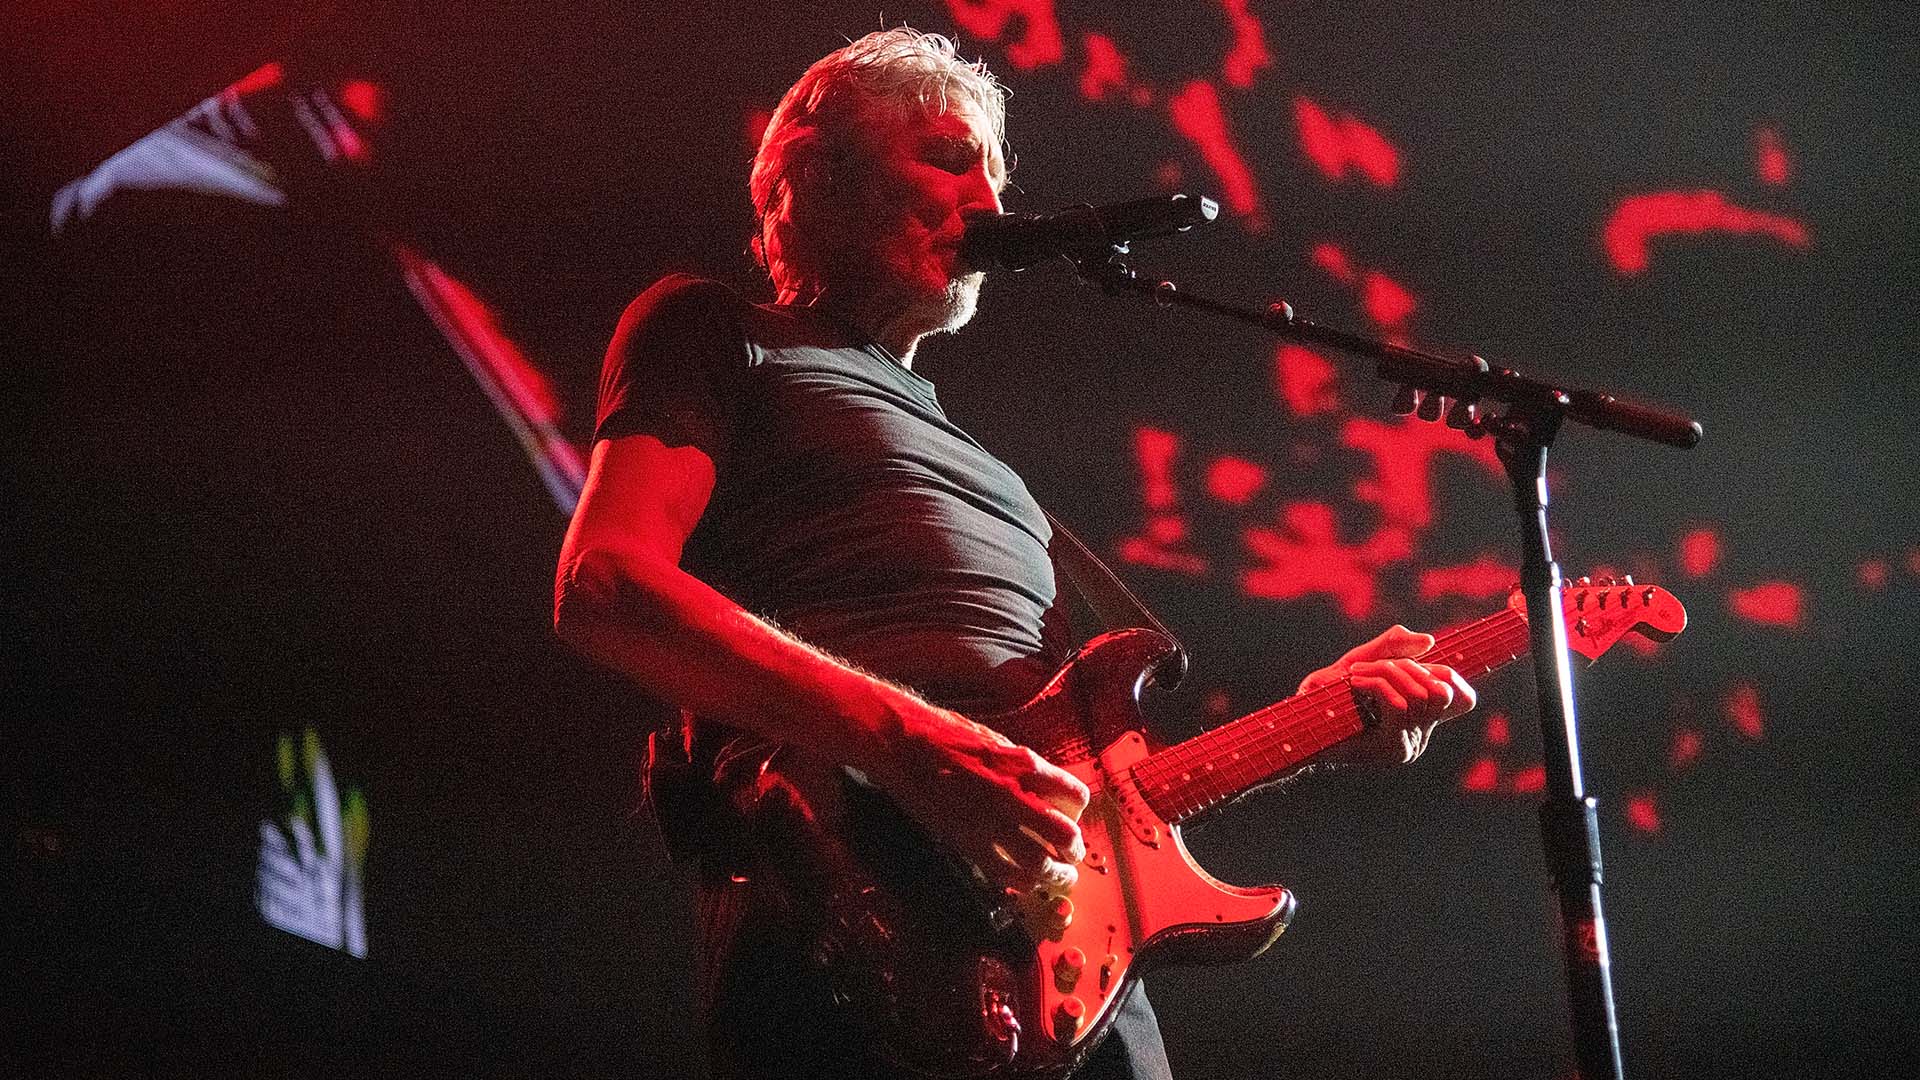 Como ya es habitual en sus giras, el show del líder de Pink Floyd tuvo un despliegue visual sorprendente e incluyó varias canciones del grupo